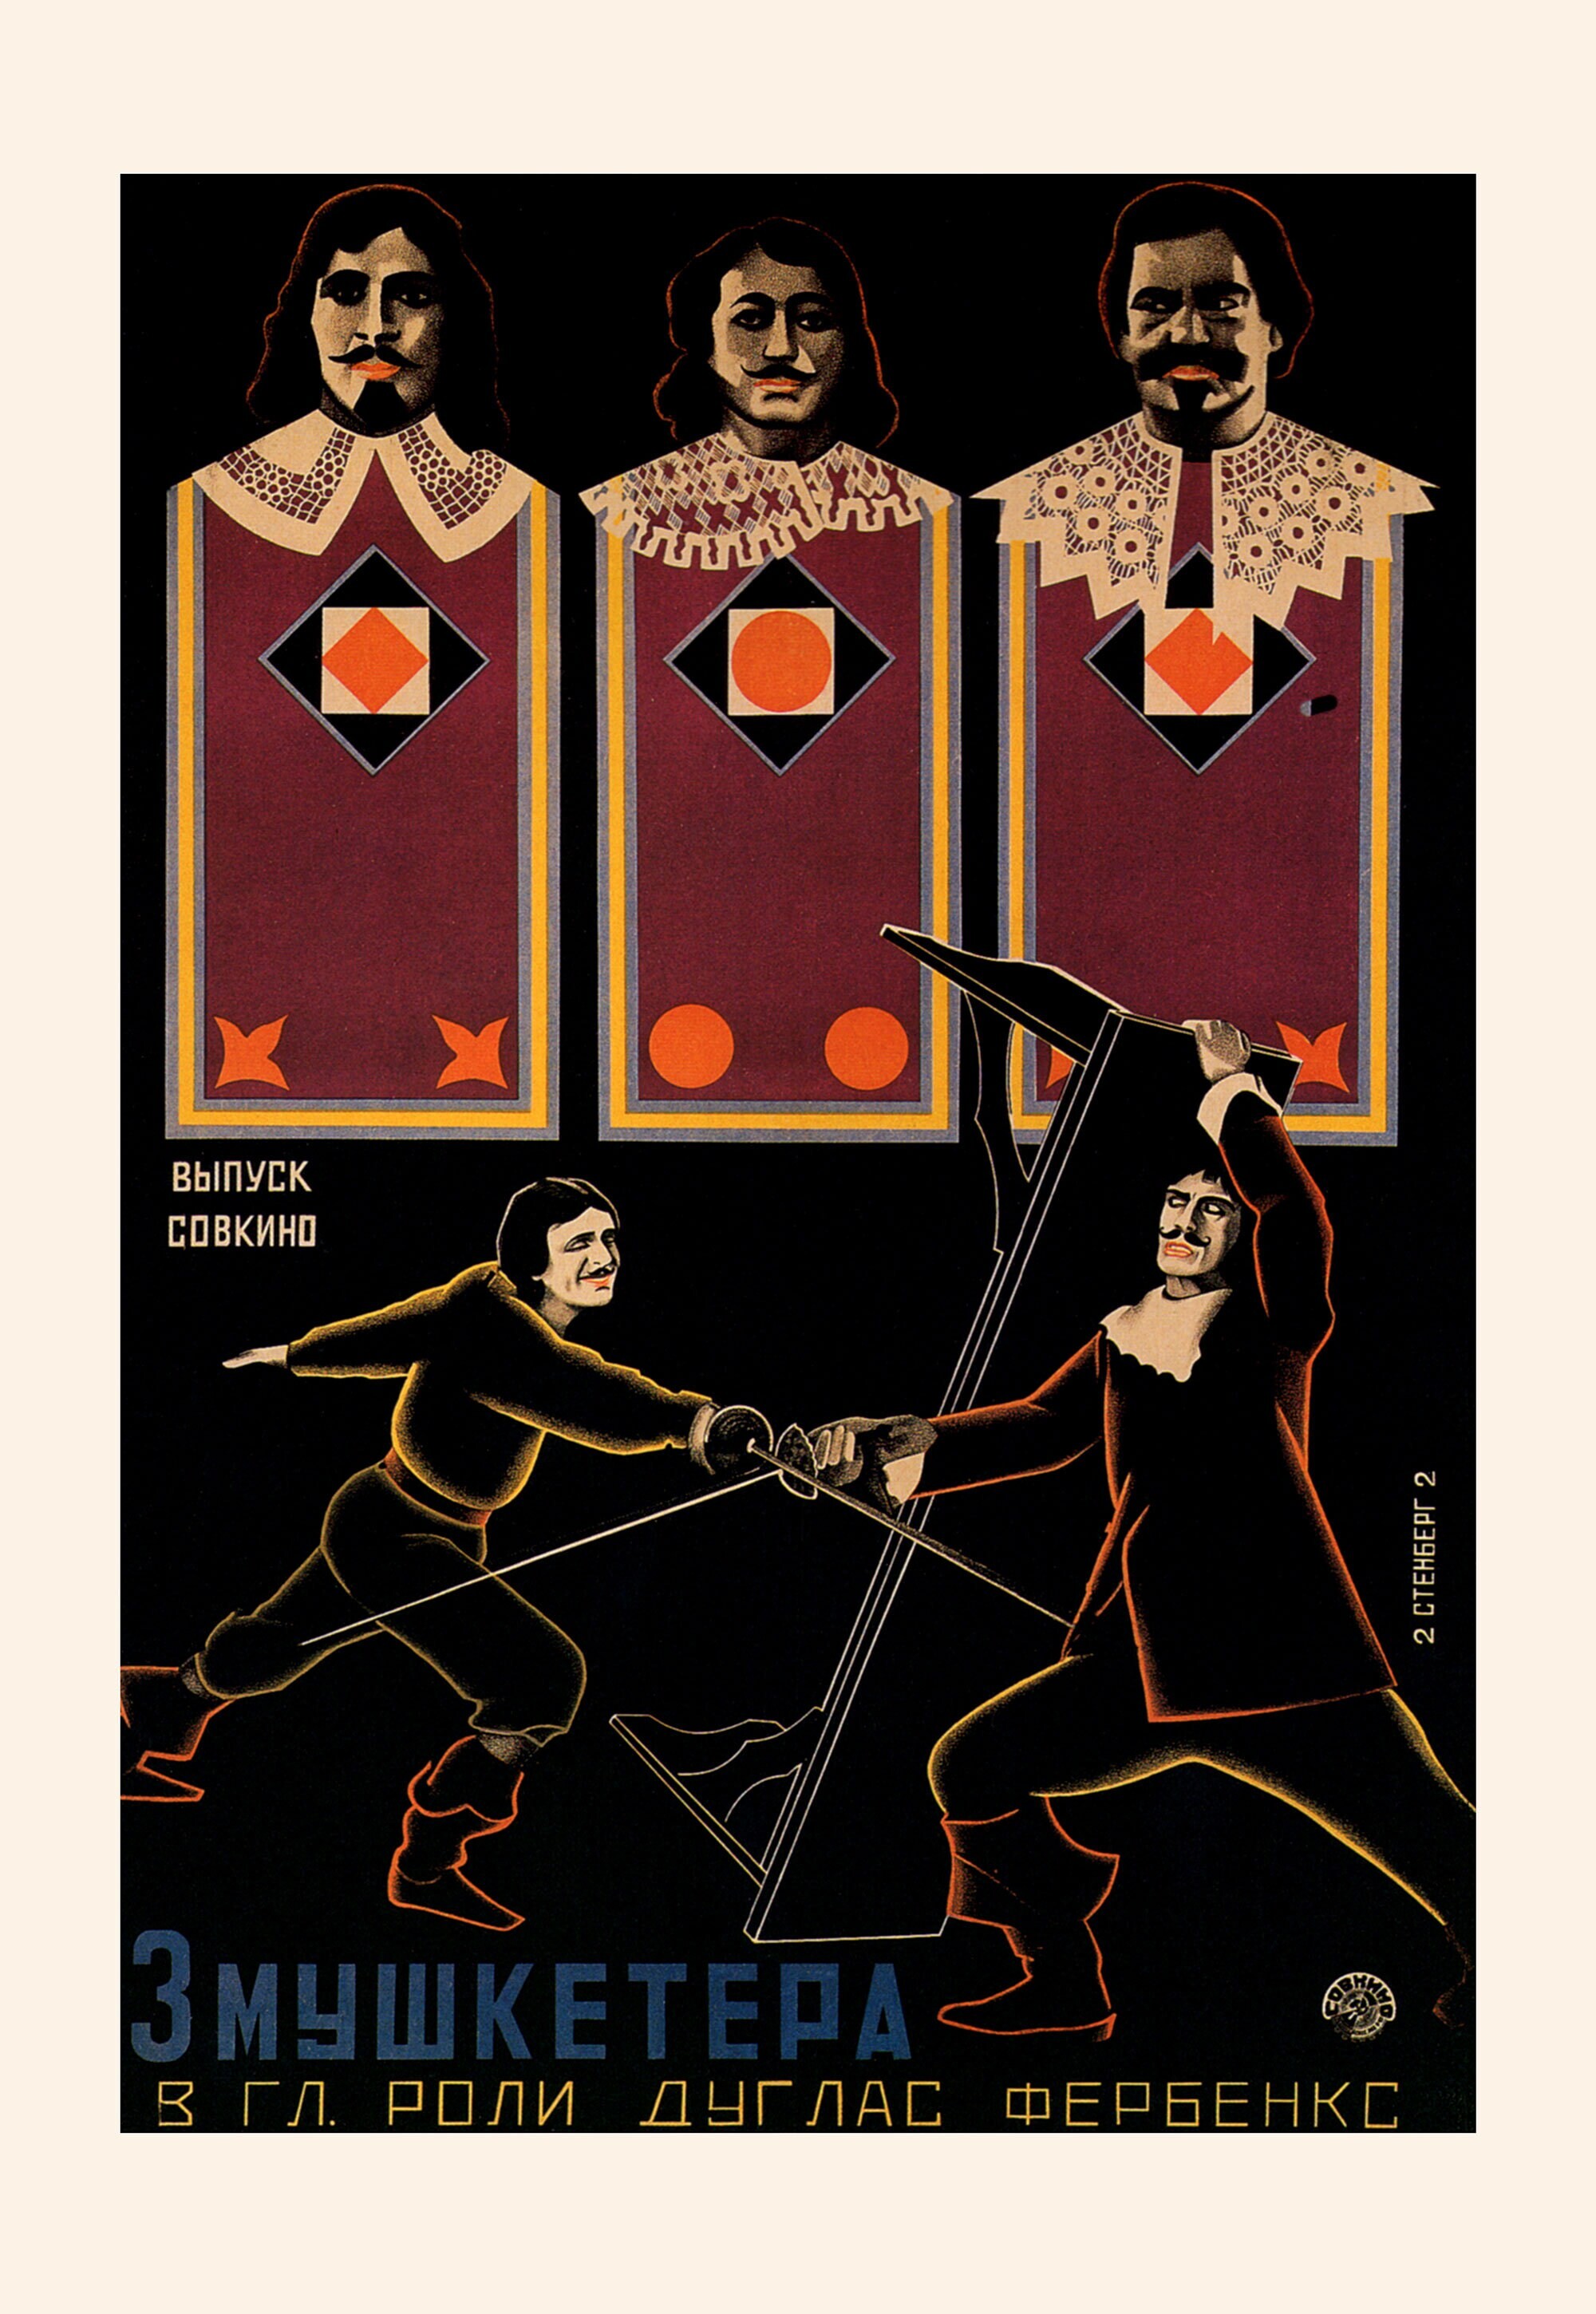 3 мушкетера, 1921 год, режиссёр Фред Нибло, плакат к фильму, авторы Владимир и Георгий Стенберги (авангардное советское искусство, 1920-е)